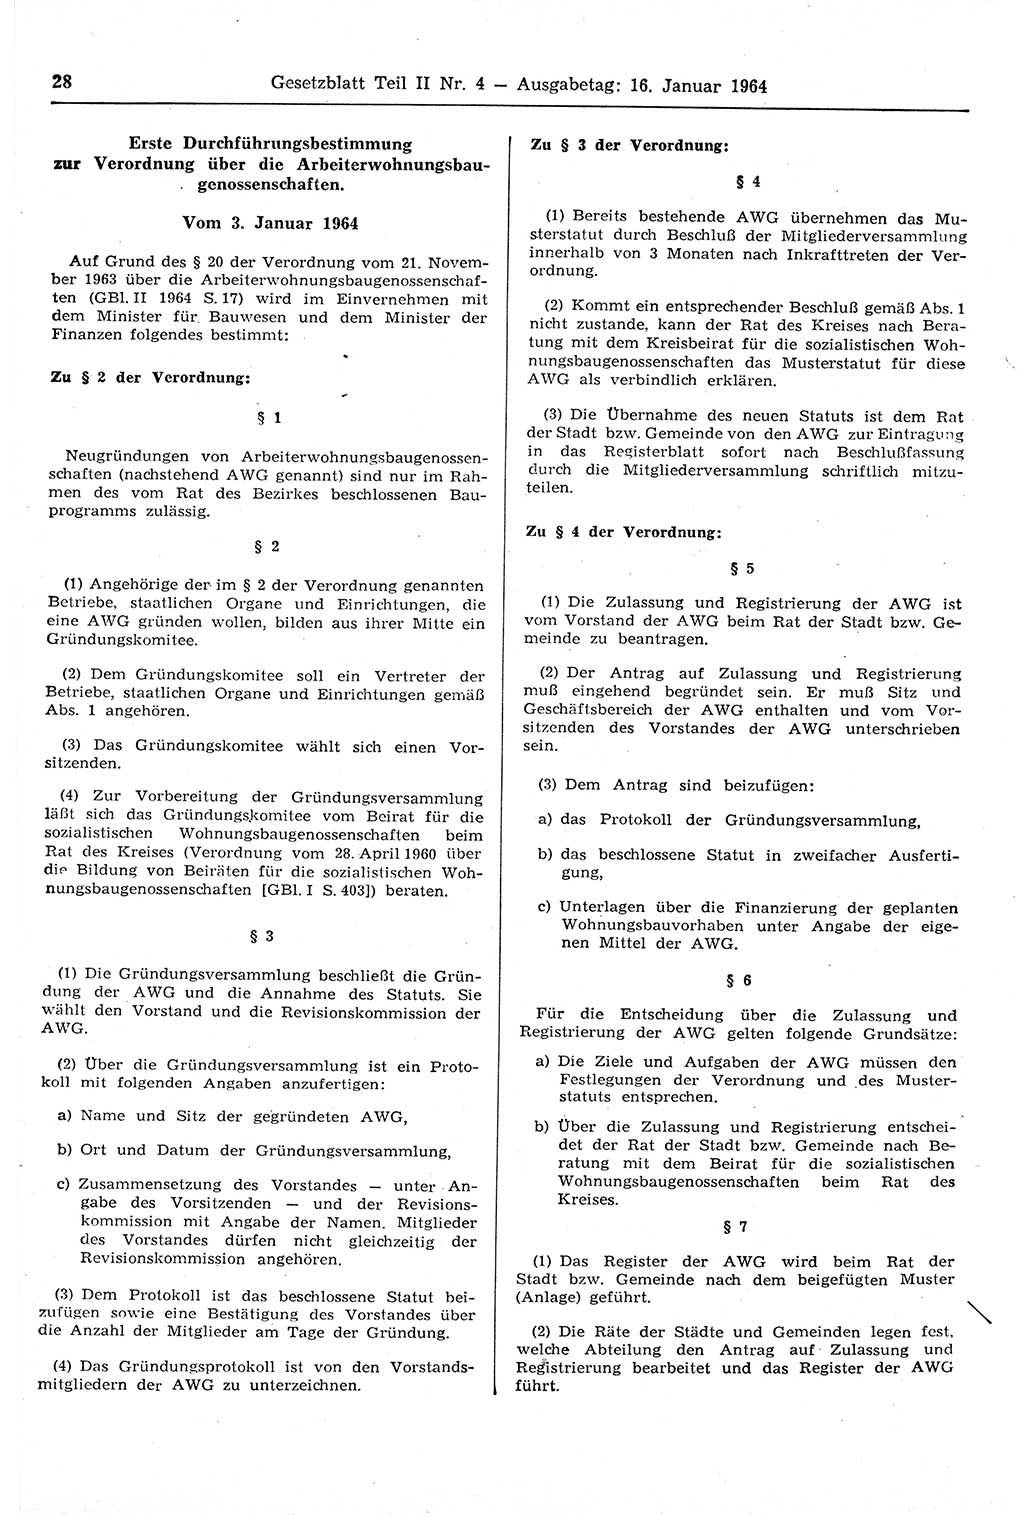 Gesetzblatt (GBl.) der Deutschen Demokratischen Republik (DDR) Teil ⅠⅠ 1964, Seite 28 (GBl. DDR ⅠⅠ 1964, S. 28)